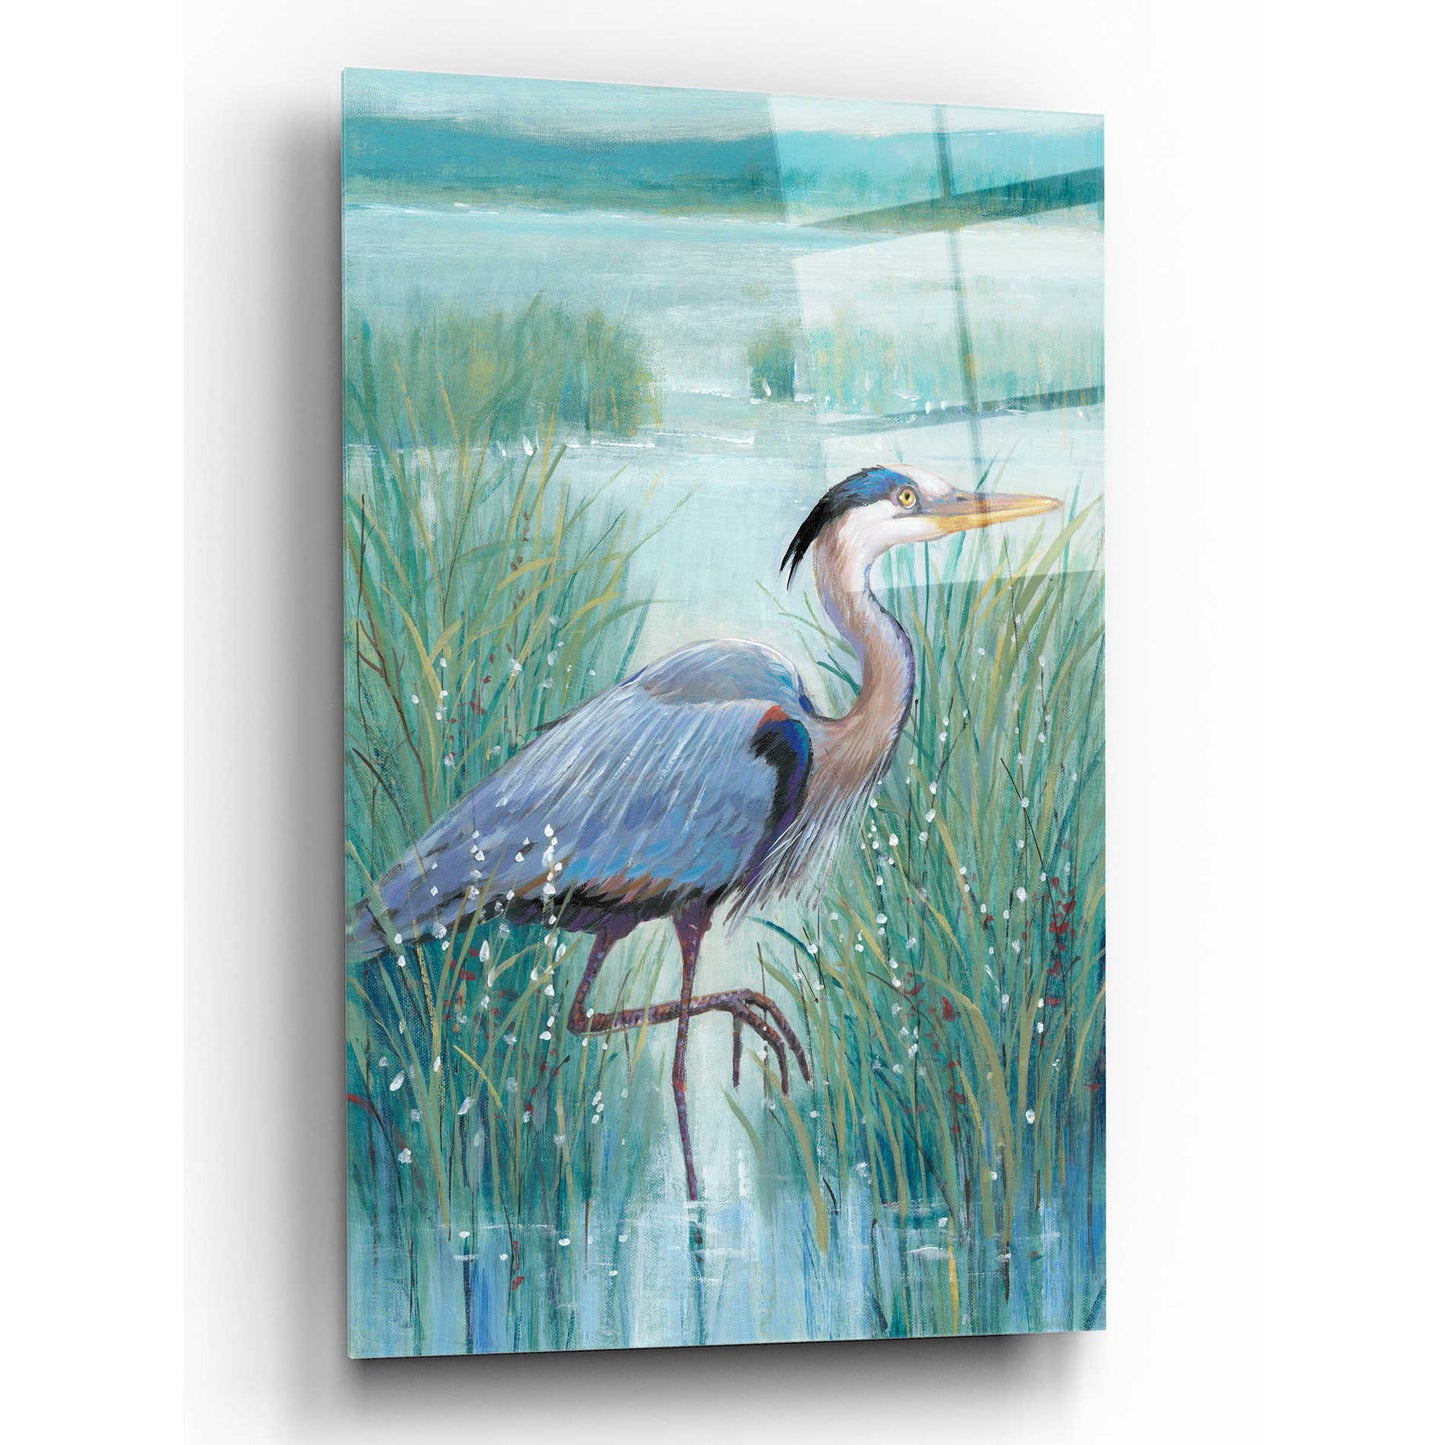 Epic Art 'Wetland Heron I' by Tim O'Toole, Acrylic Glass Wall Art